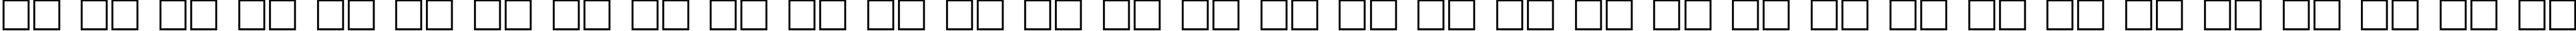 Пример написания русского алфавита шрифтом Daggers Regular